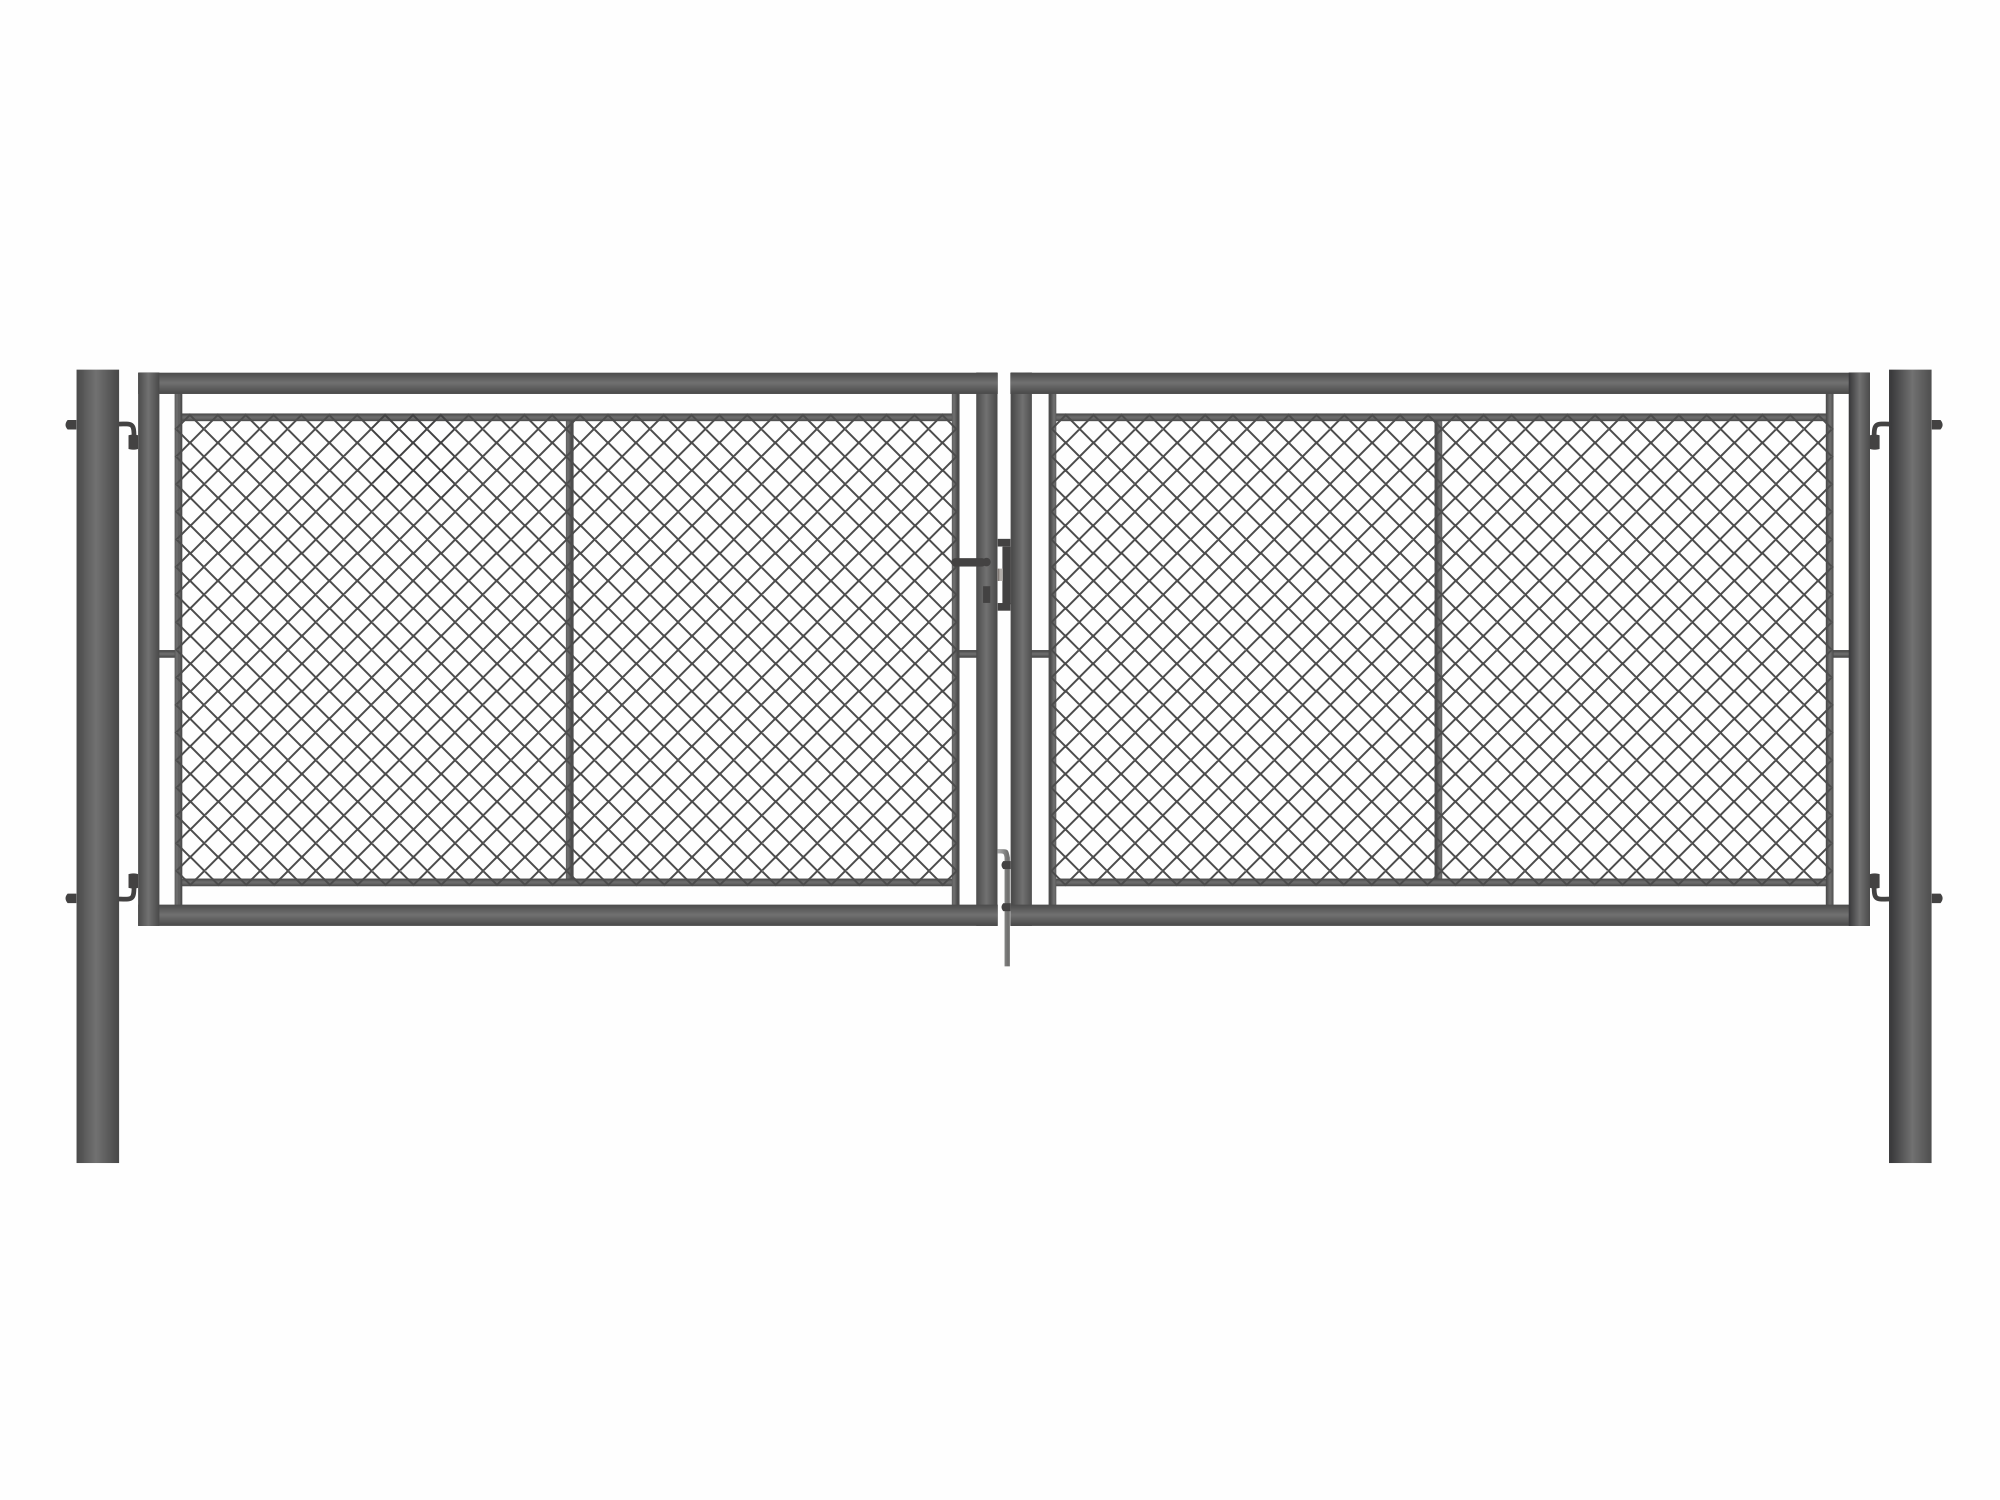 Brána zahradní dvoukřídlá antracit, výška 145 x 500 cm, FAB, s výplní klasického pletiva PLOTY Sklad5 9893 535